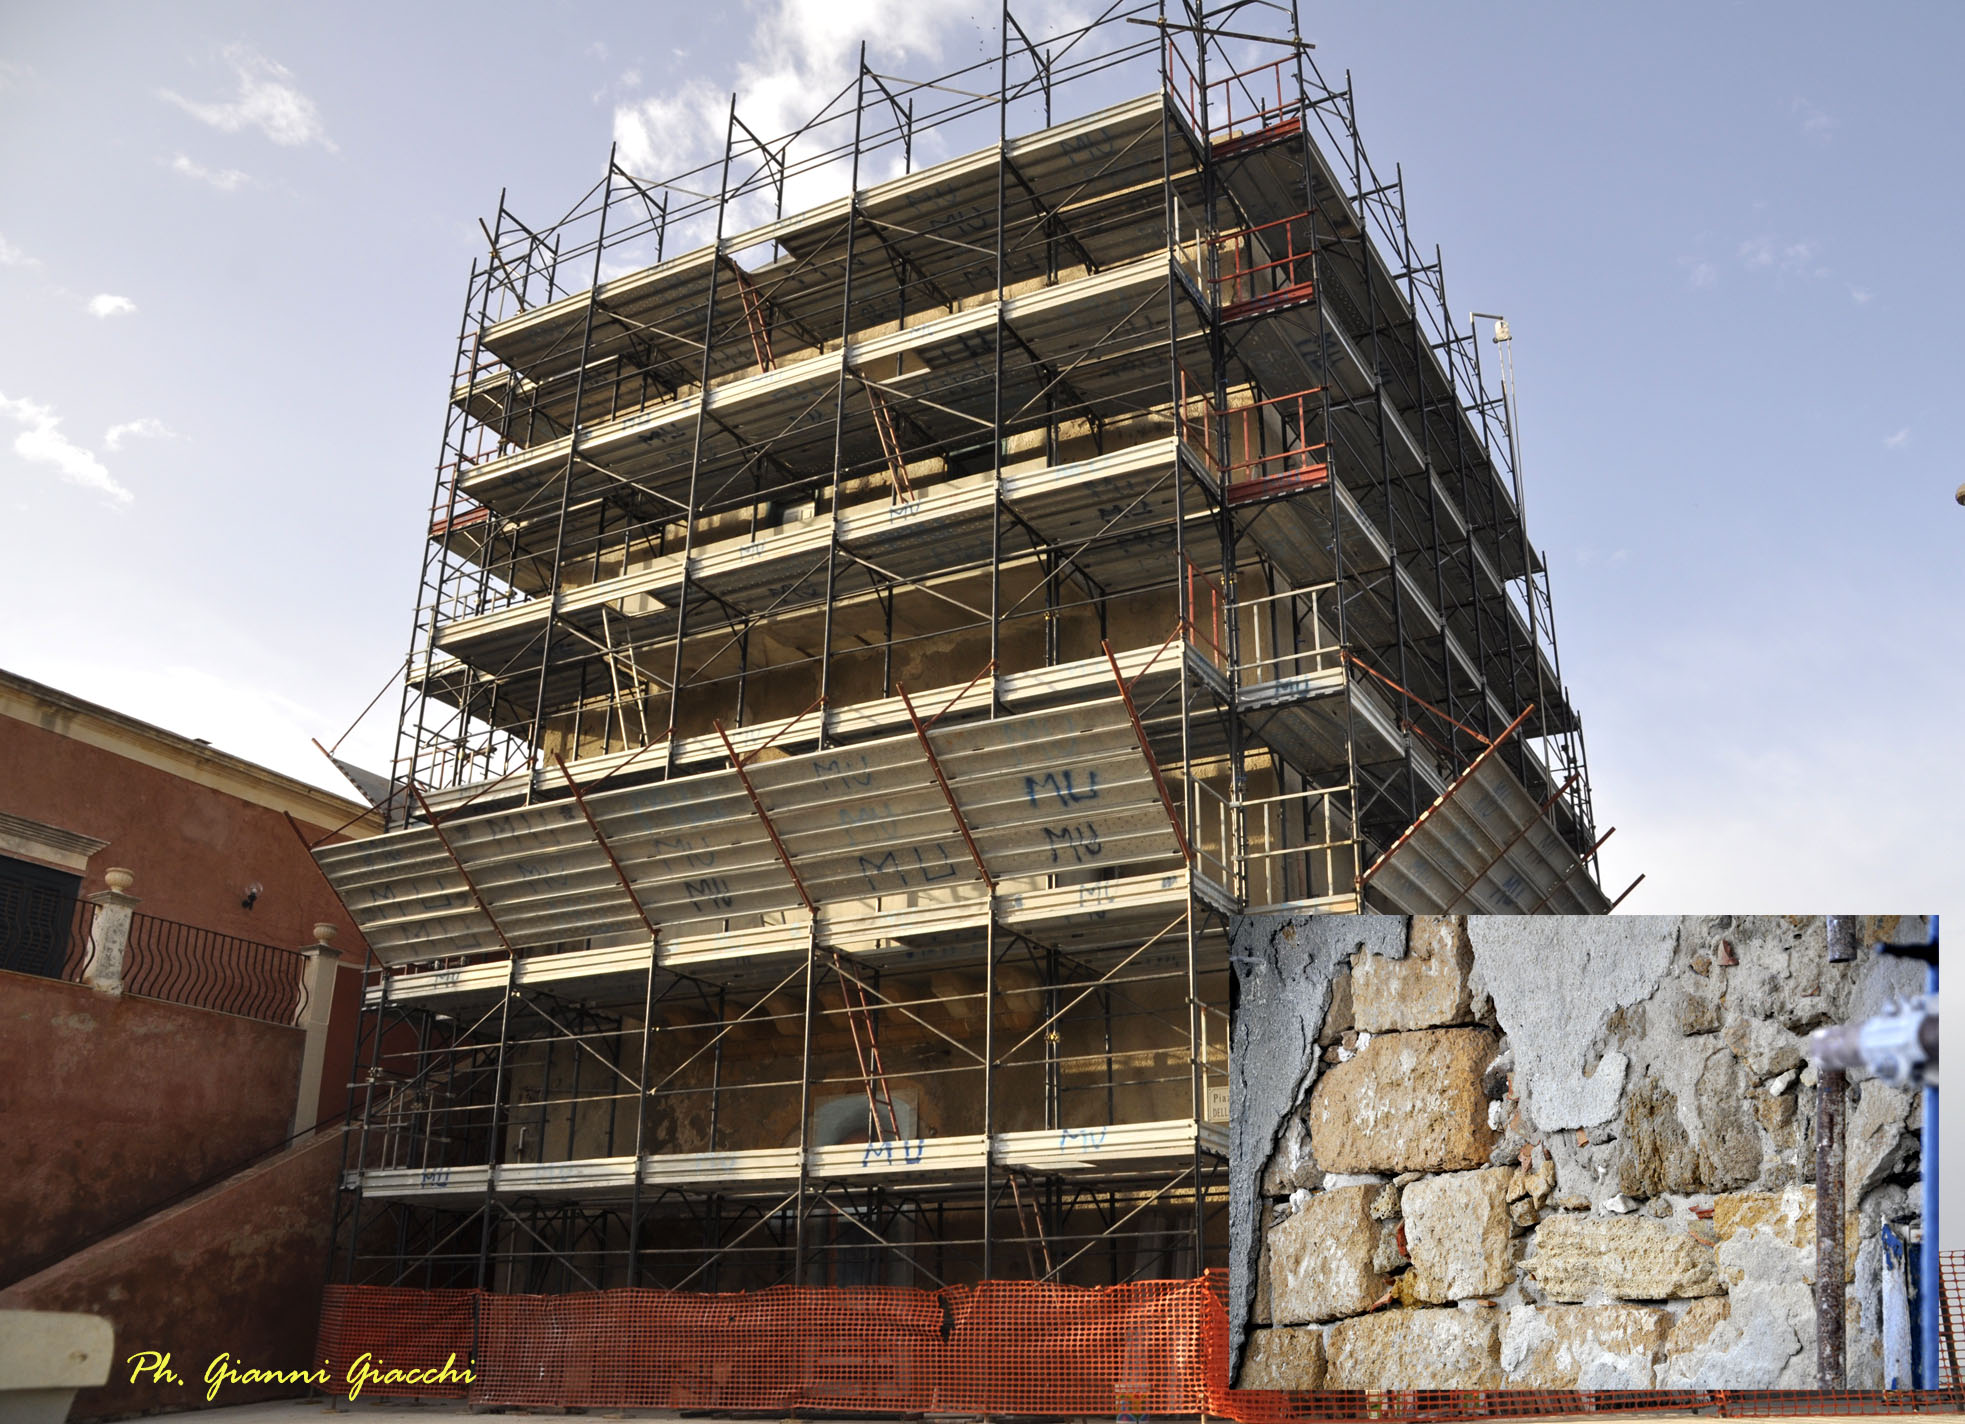  P.Secca, la torre torna all’antico splendore: iniziati i lavori di restauro che finiranno a maggio